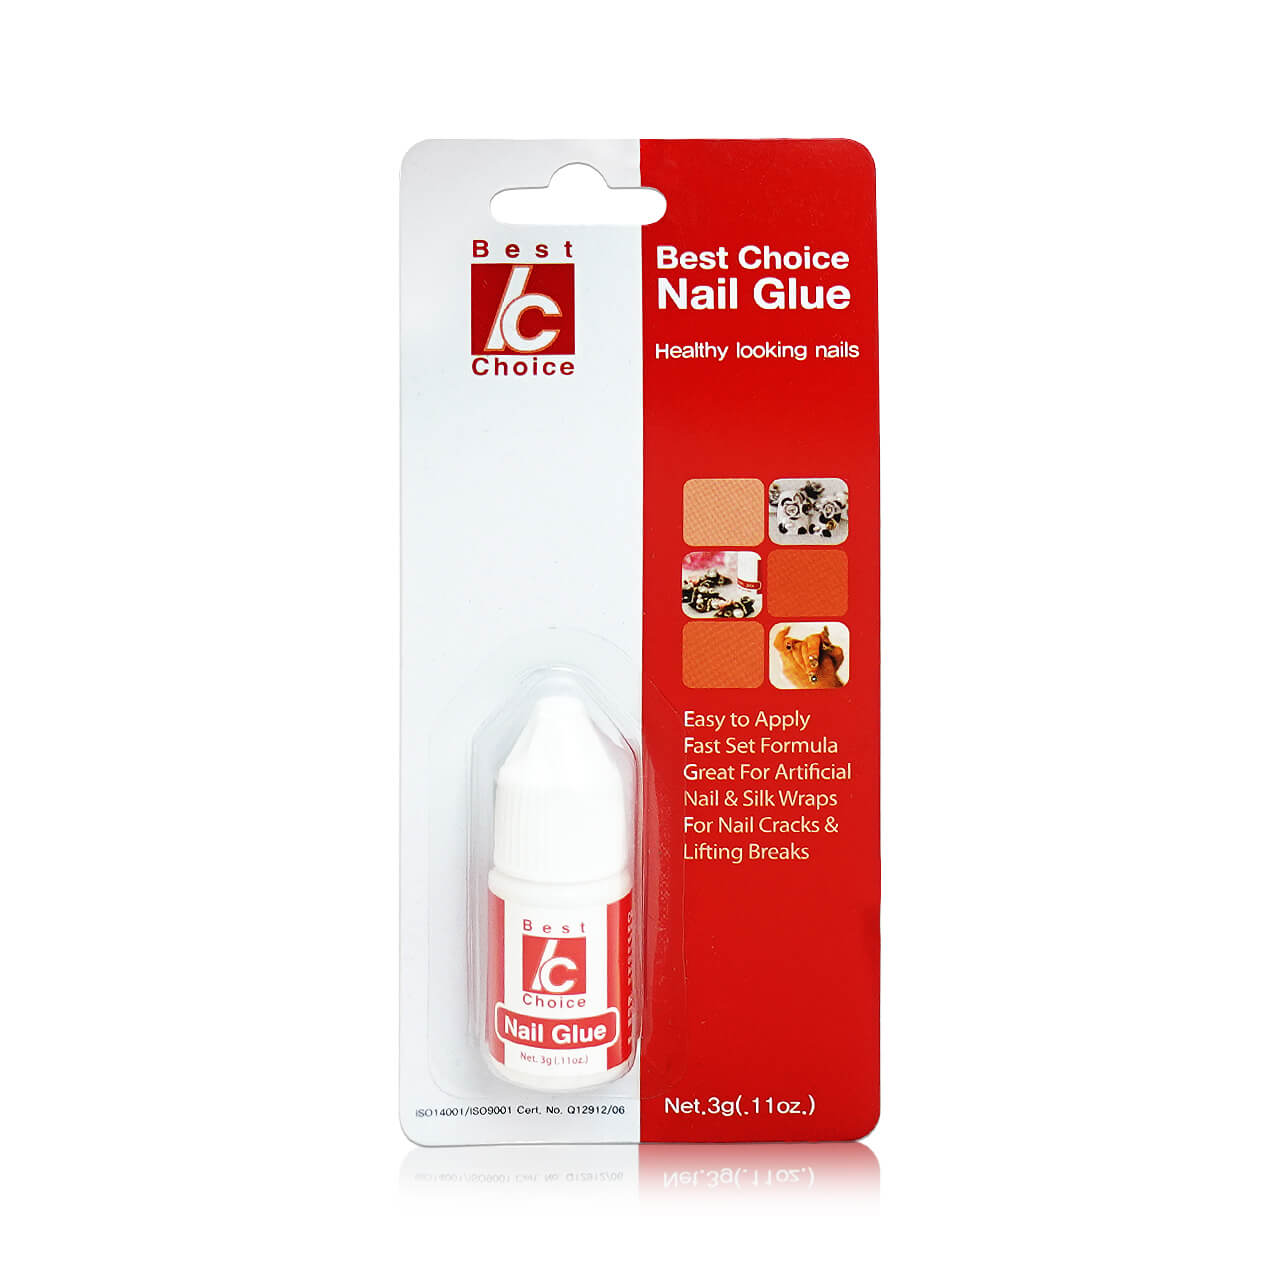 13-8007450813299-BC-CG-3B-Best Choice Nail Glue 3G